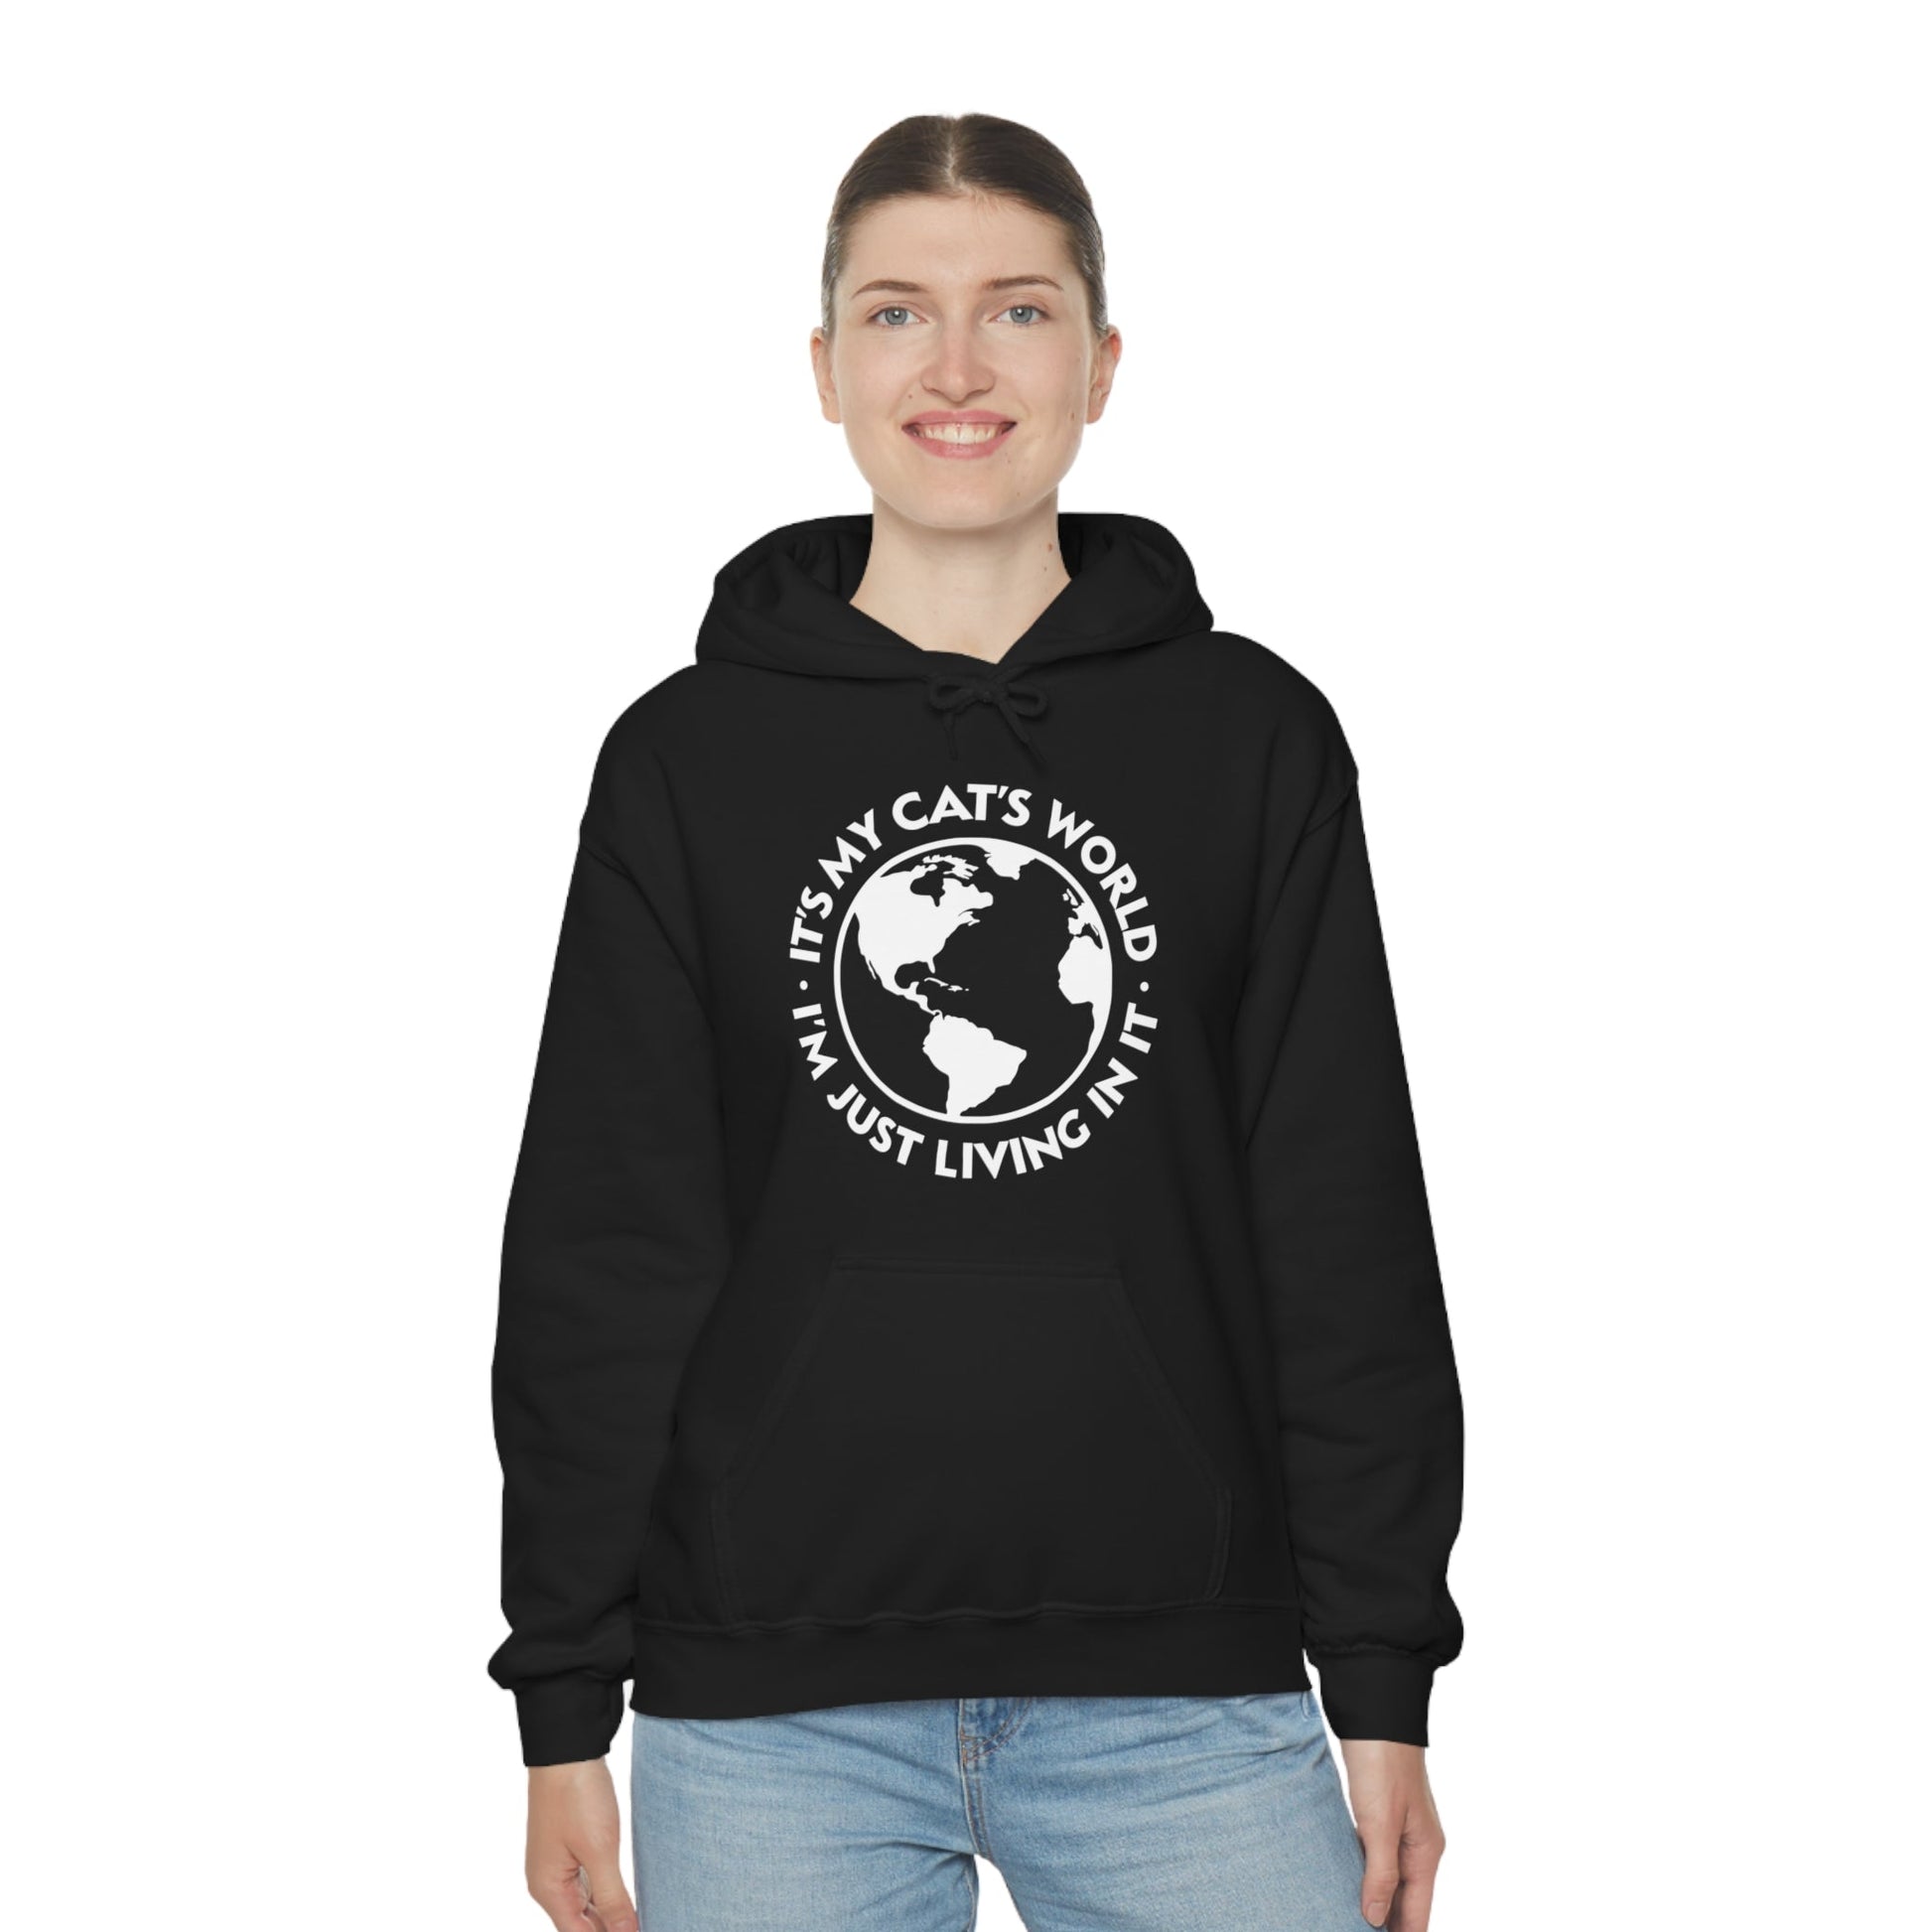 It's My Cat's World | Hooded Sweatshirt - Detezi Designs-57587533495569330094